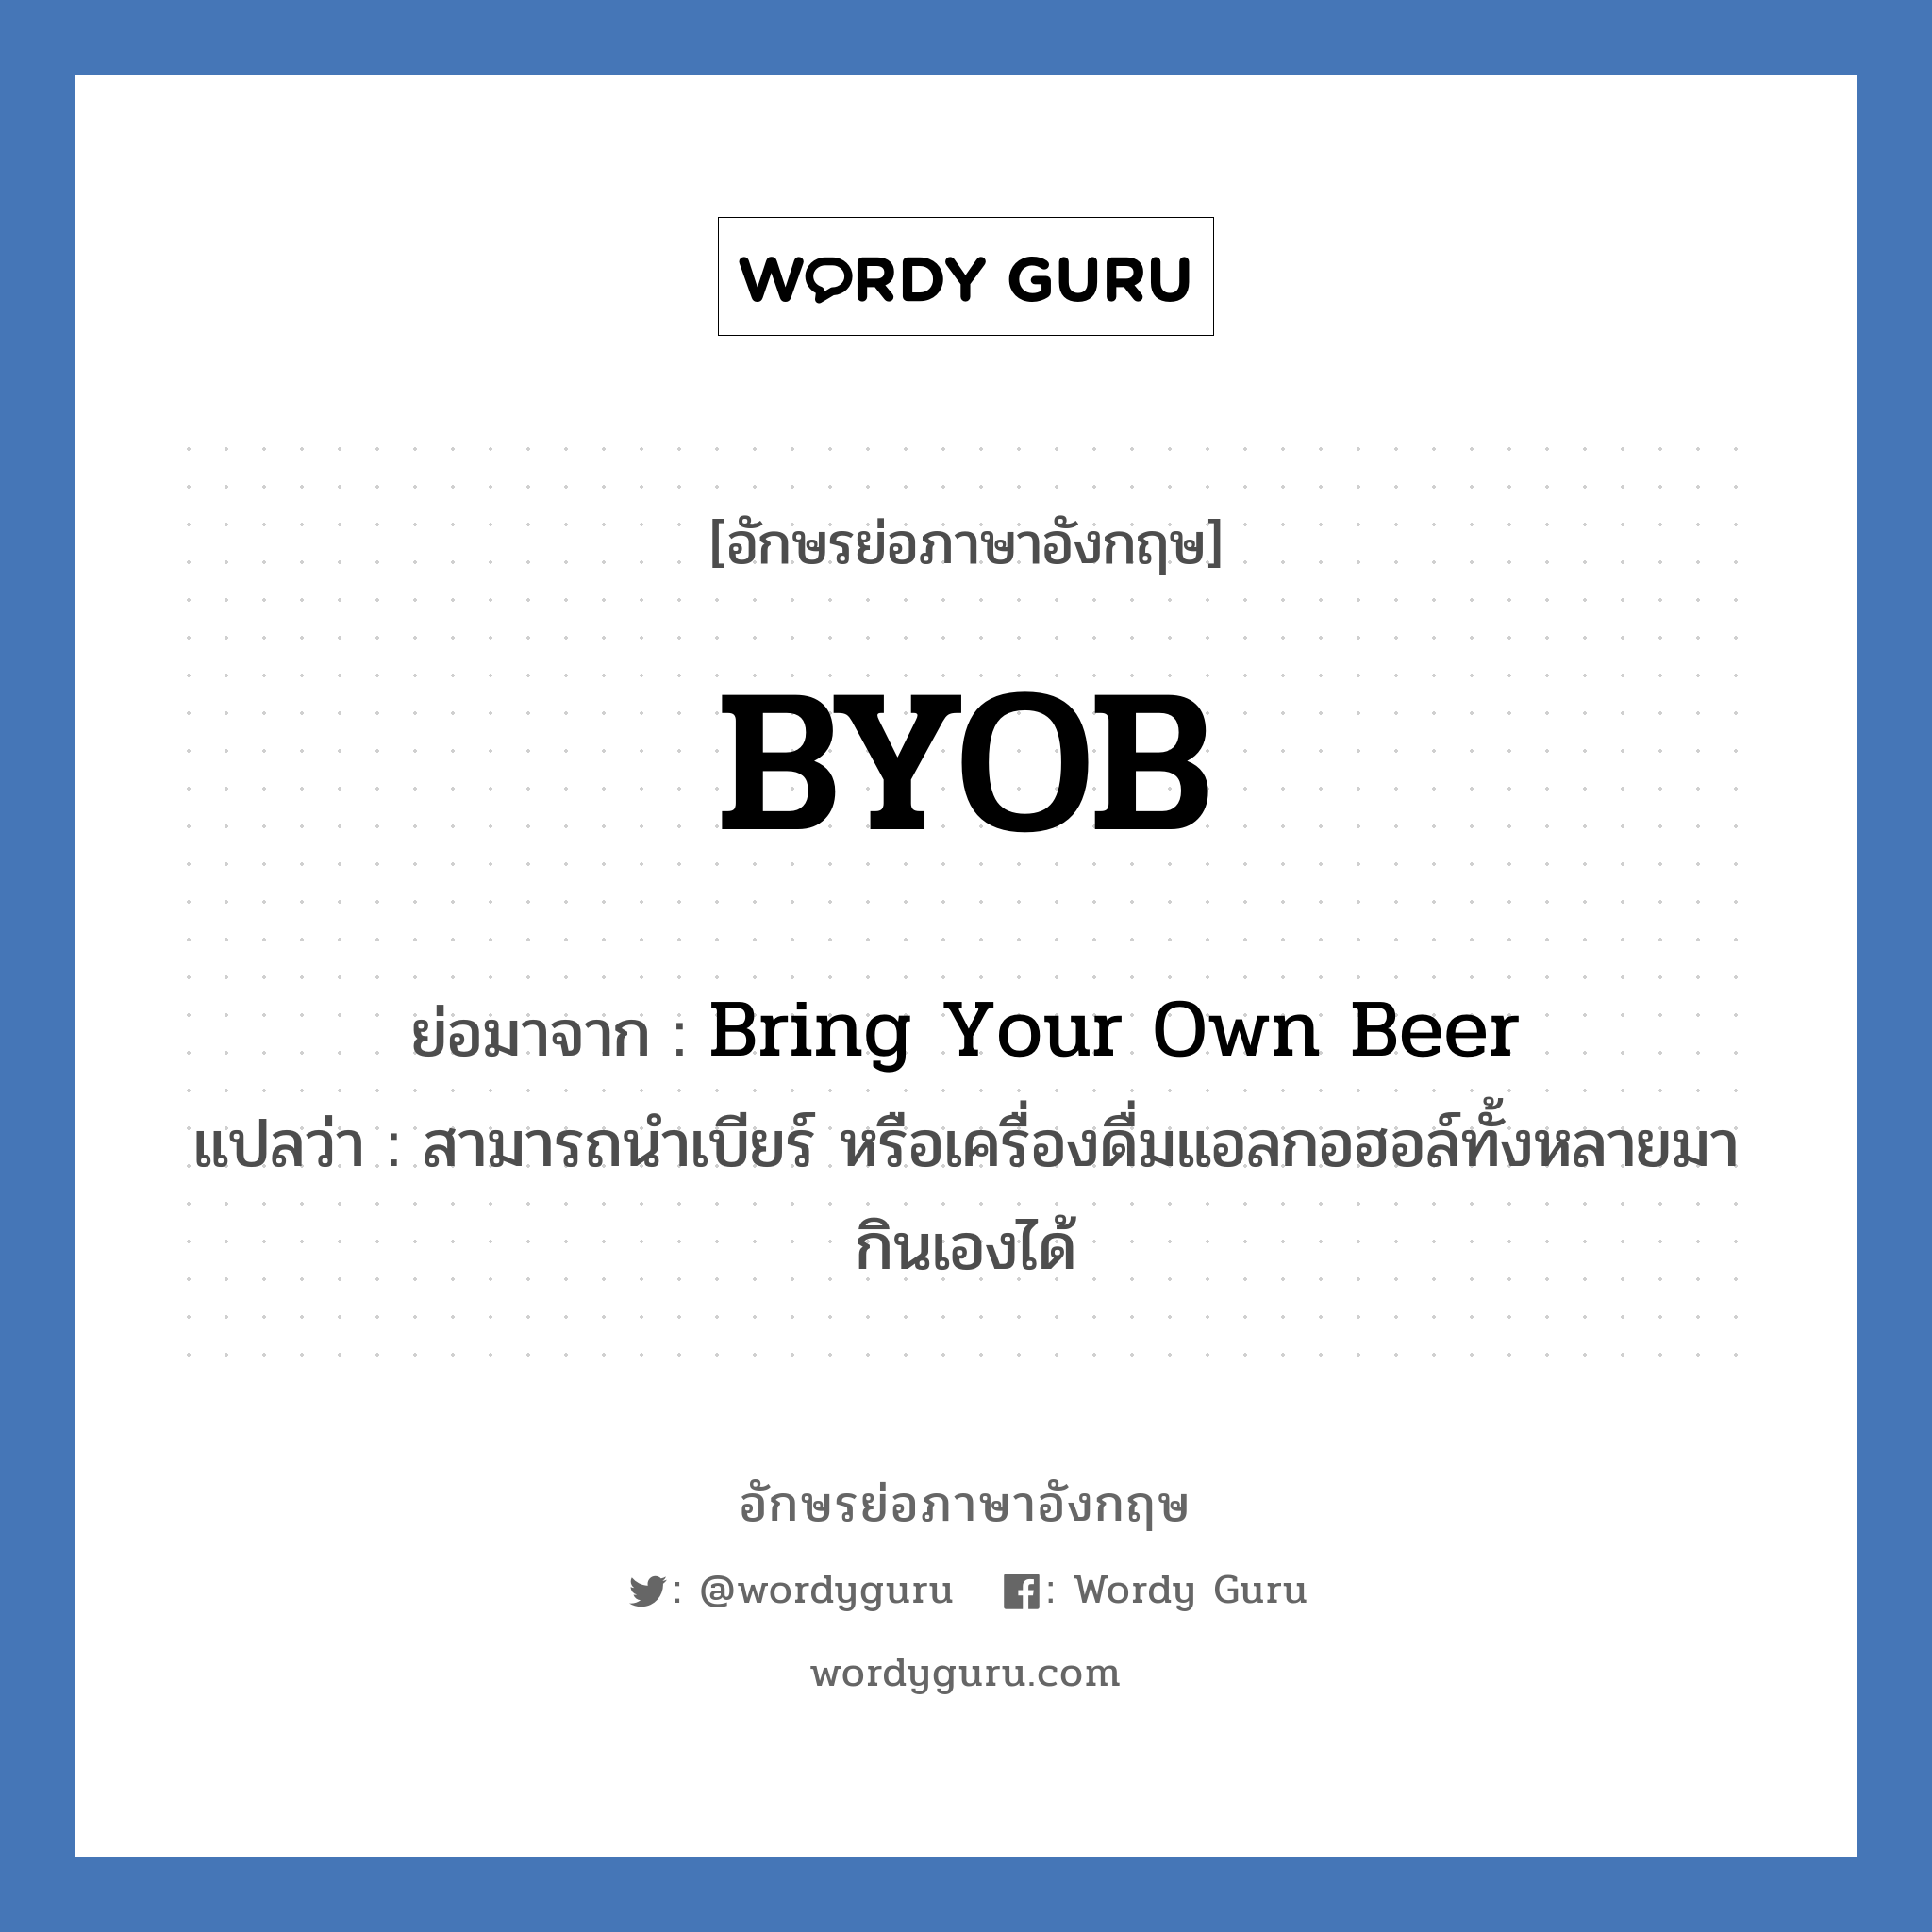 Bring Your Own Beer คำย่อคือ? แปลว่า?, อักษรย่อภาษาอังกฤษ Bring Your Own Beer ย่อมาจาก BYOB แปลว่า สามารถนำเบียร์ หรือเครื่องดื่มแอลกอฮอล์ทั้งหลายมากินเองได้